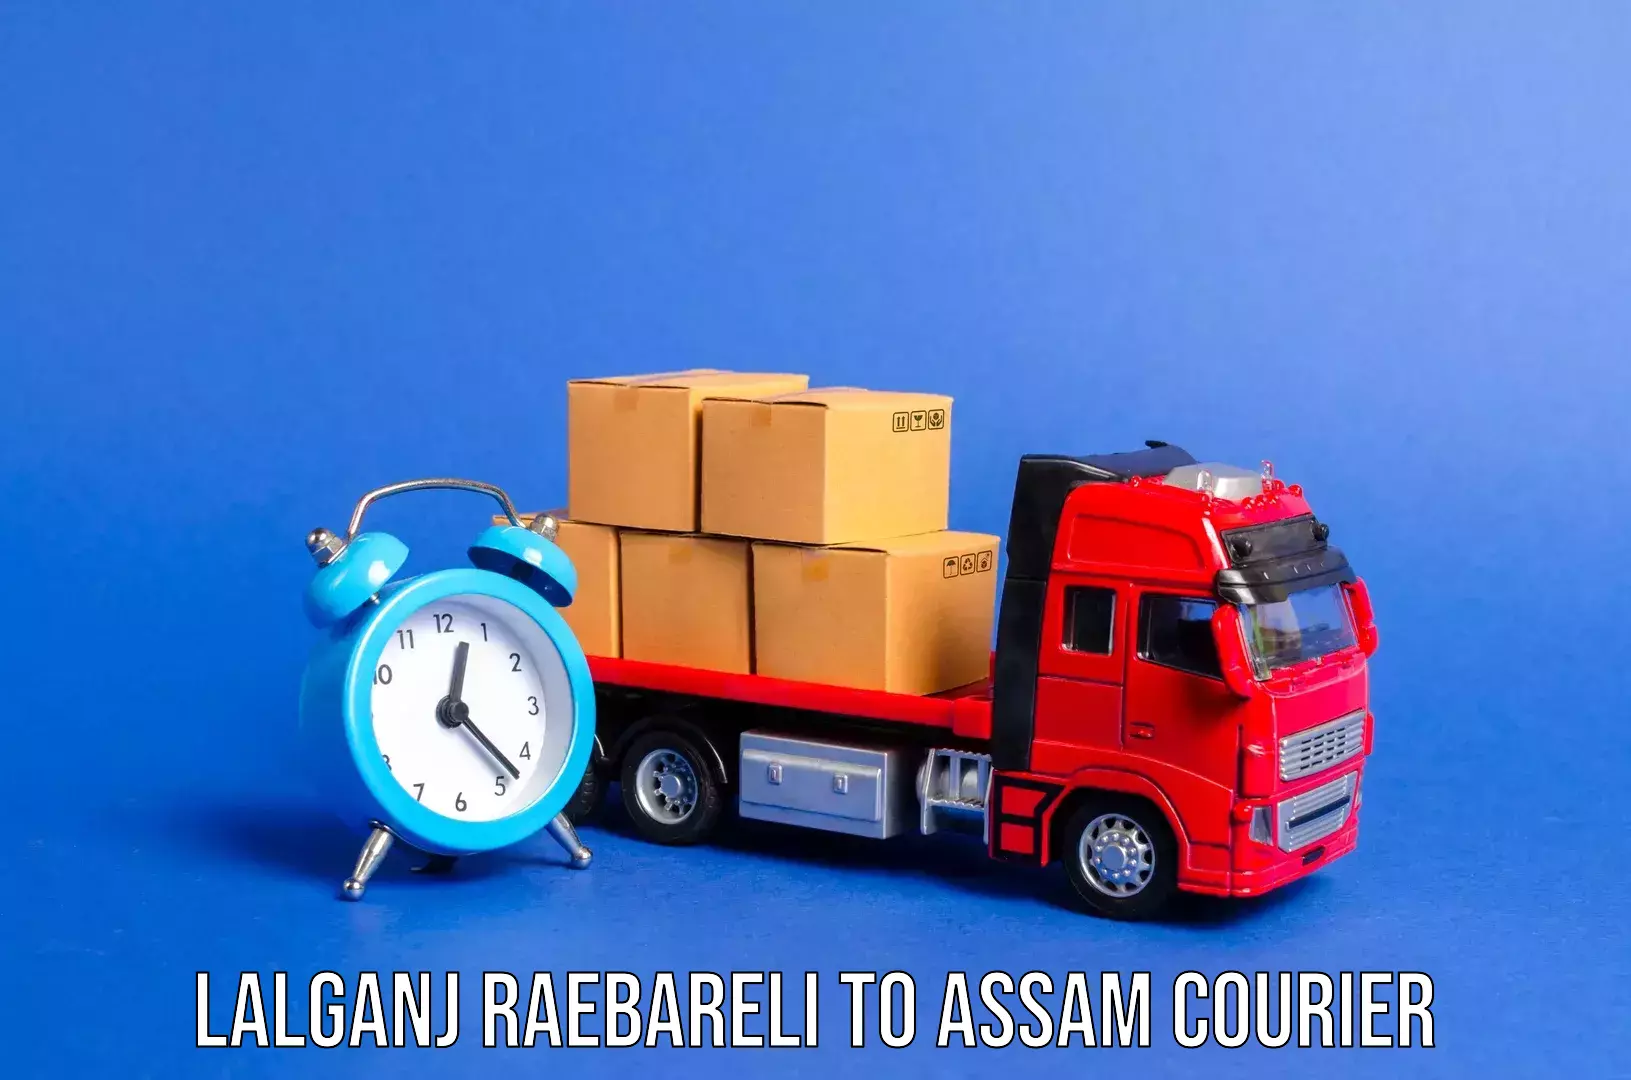 Baggage transport scheduler Lalganj Raebareli to Duliajan